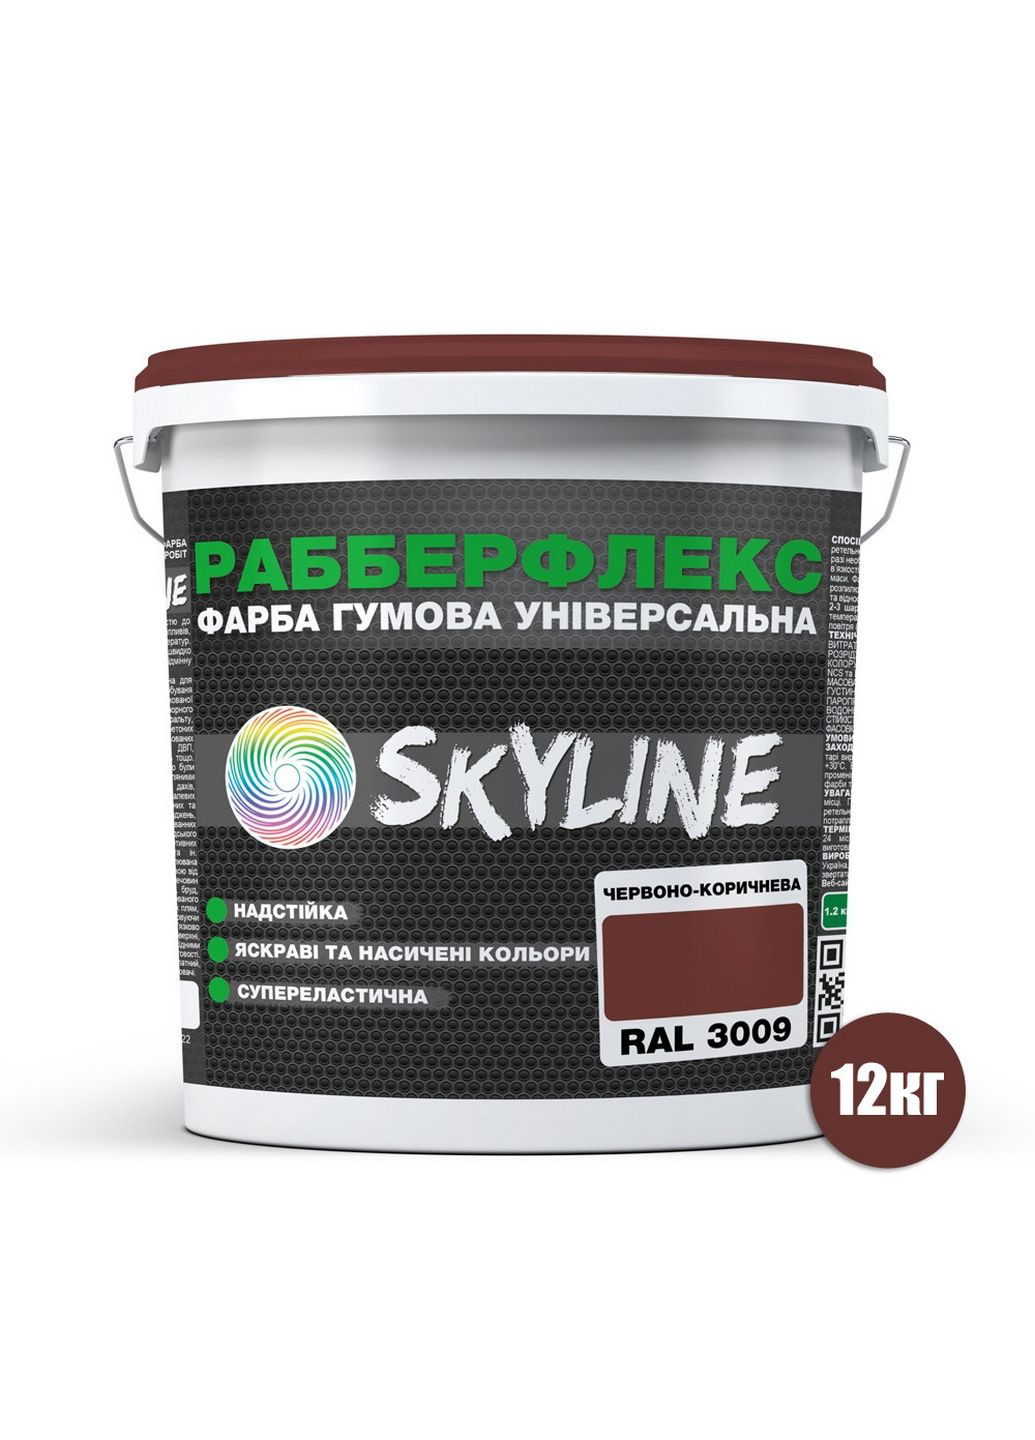 Надстійка фарба гумова супереластична «РабберФлекс» 12 кг SkyLine (289363711)